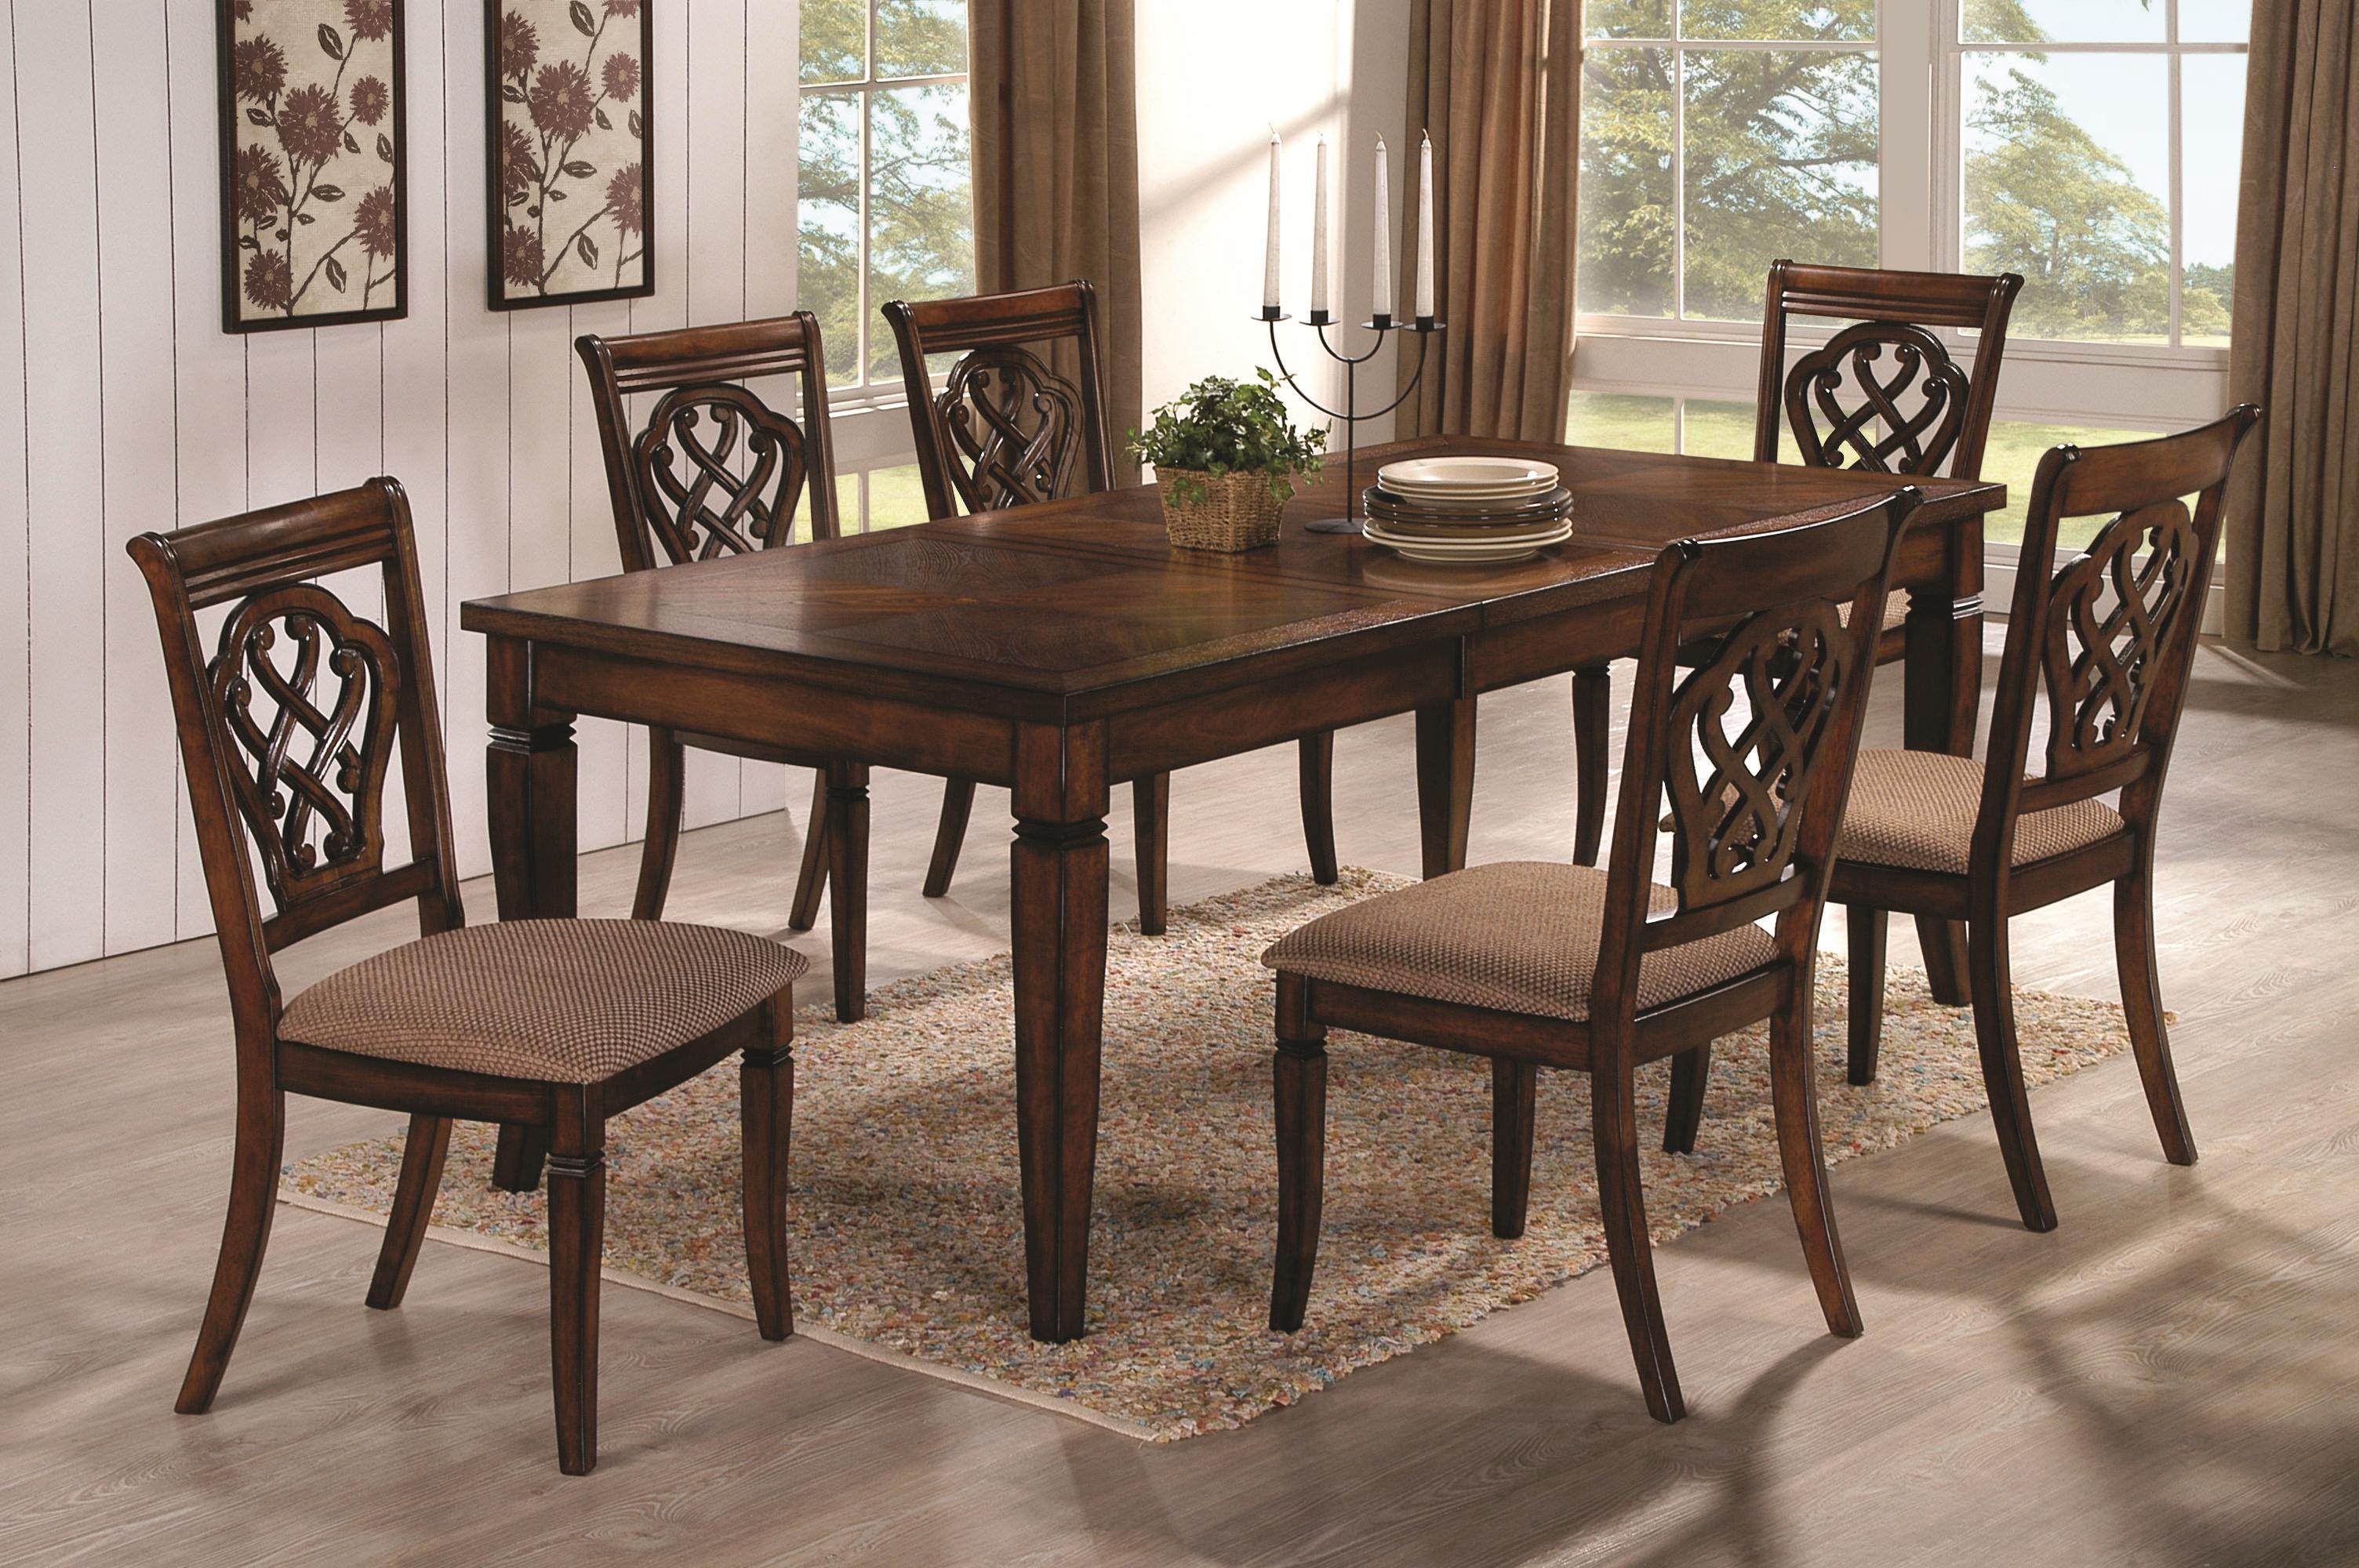 Столы для гостиной фото и цены. Стол обеденный. Стол кухонный. Стол деревянный. Стол кухонный деревянный.